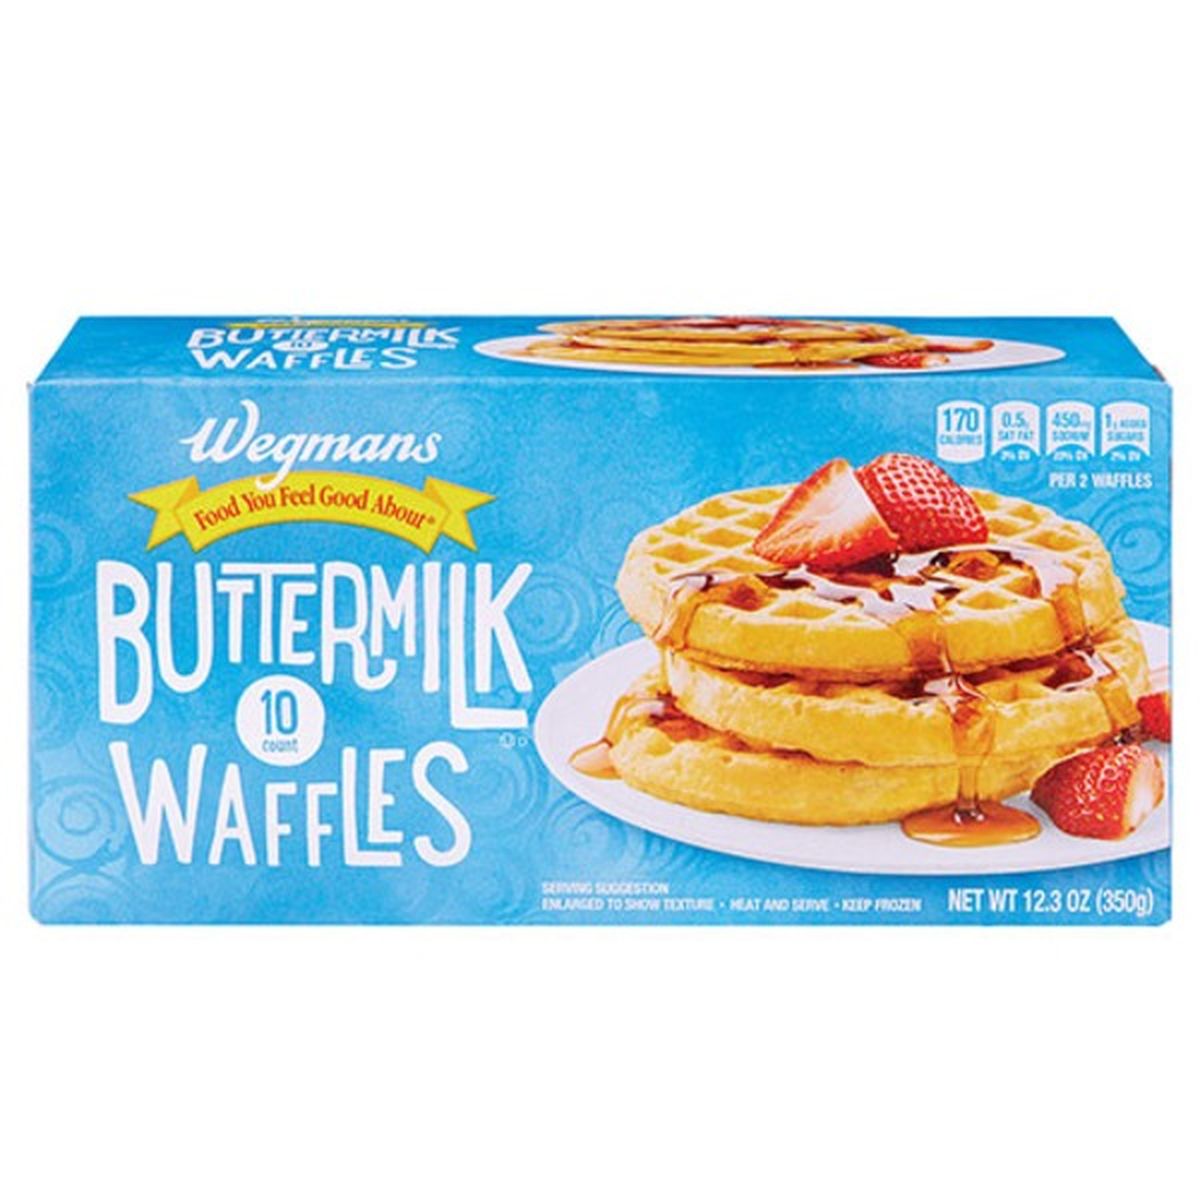 Calories in Wegmans Buttermilk Waffles